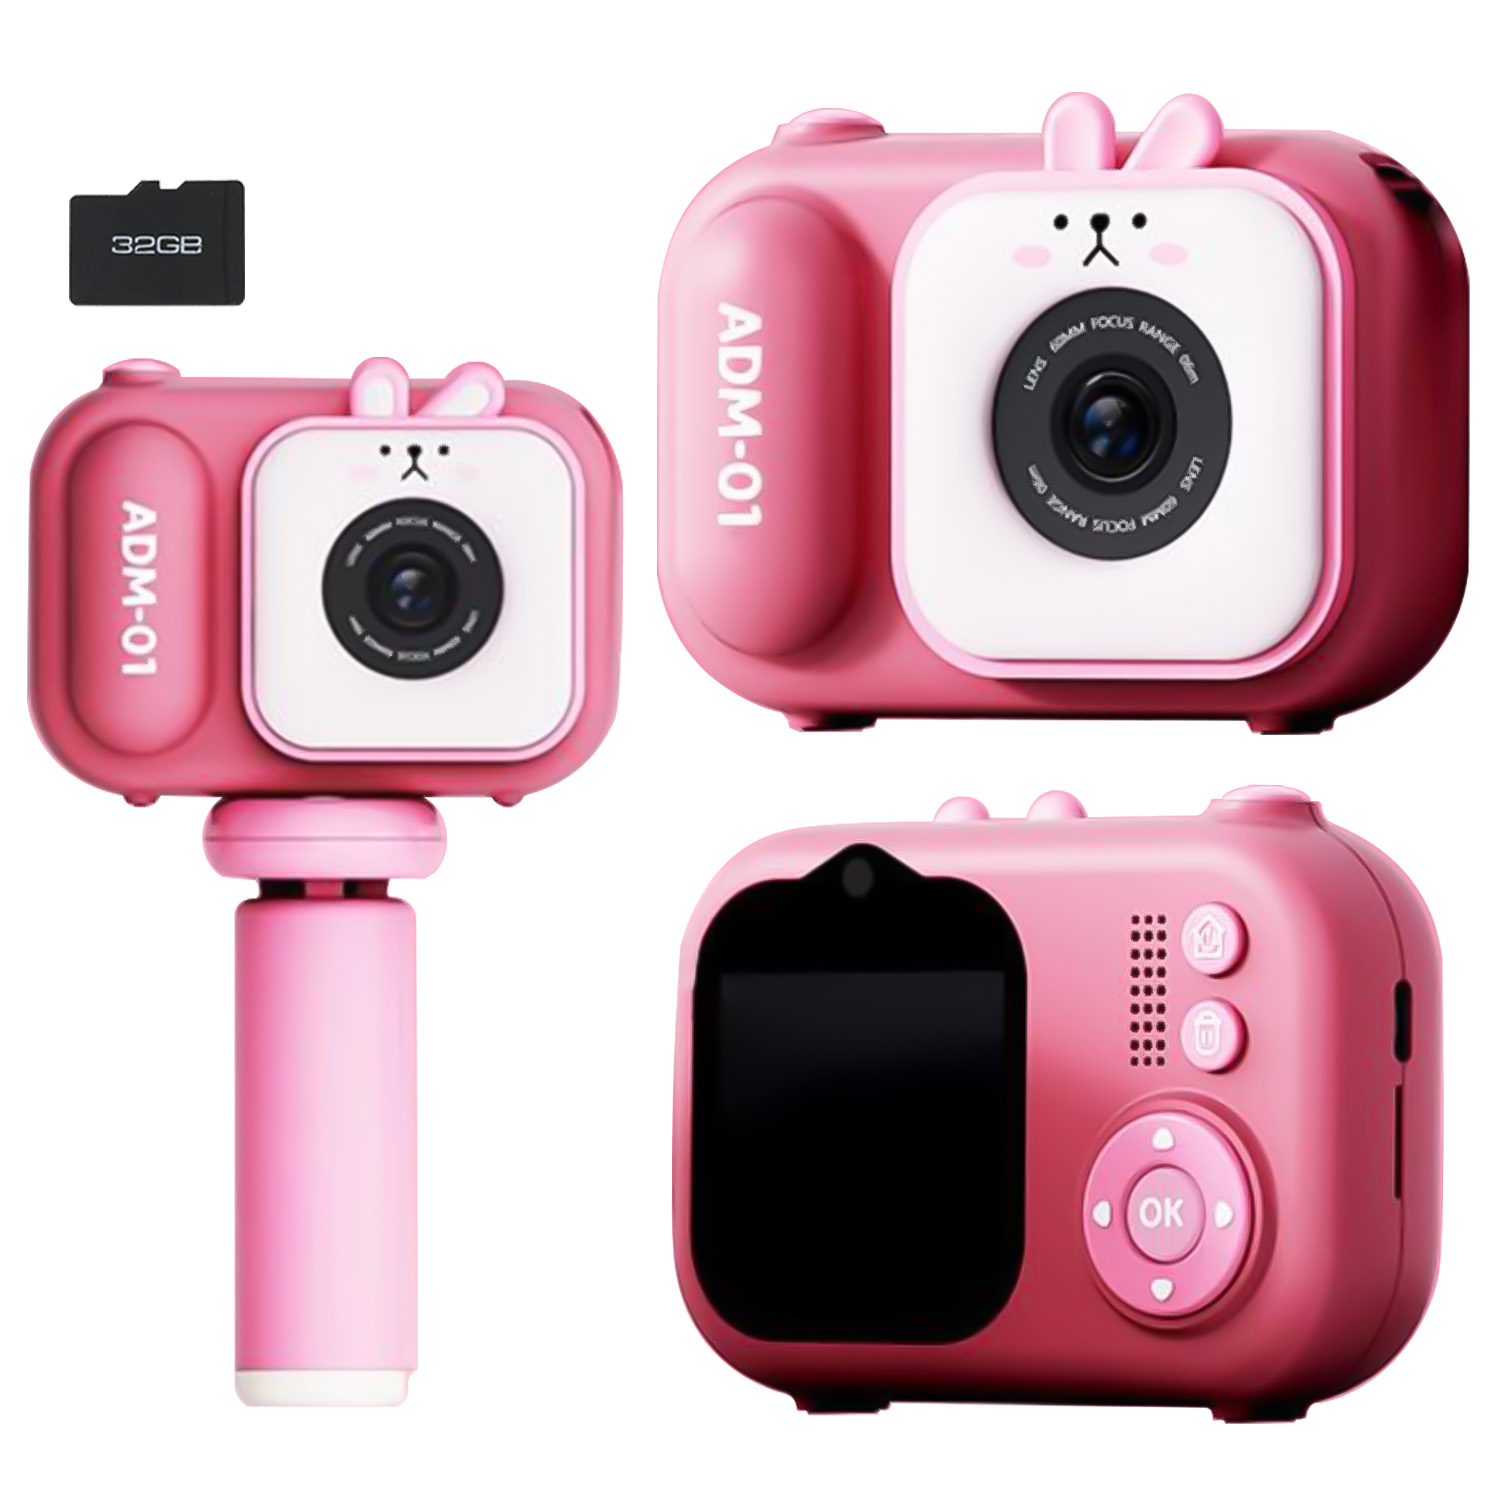 キッズデジカメ デジタルカメラ ビデオカメラ 三脚 SDカード付 32G